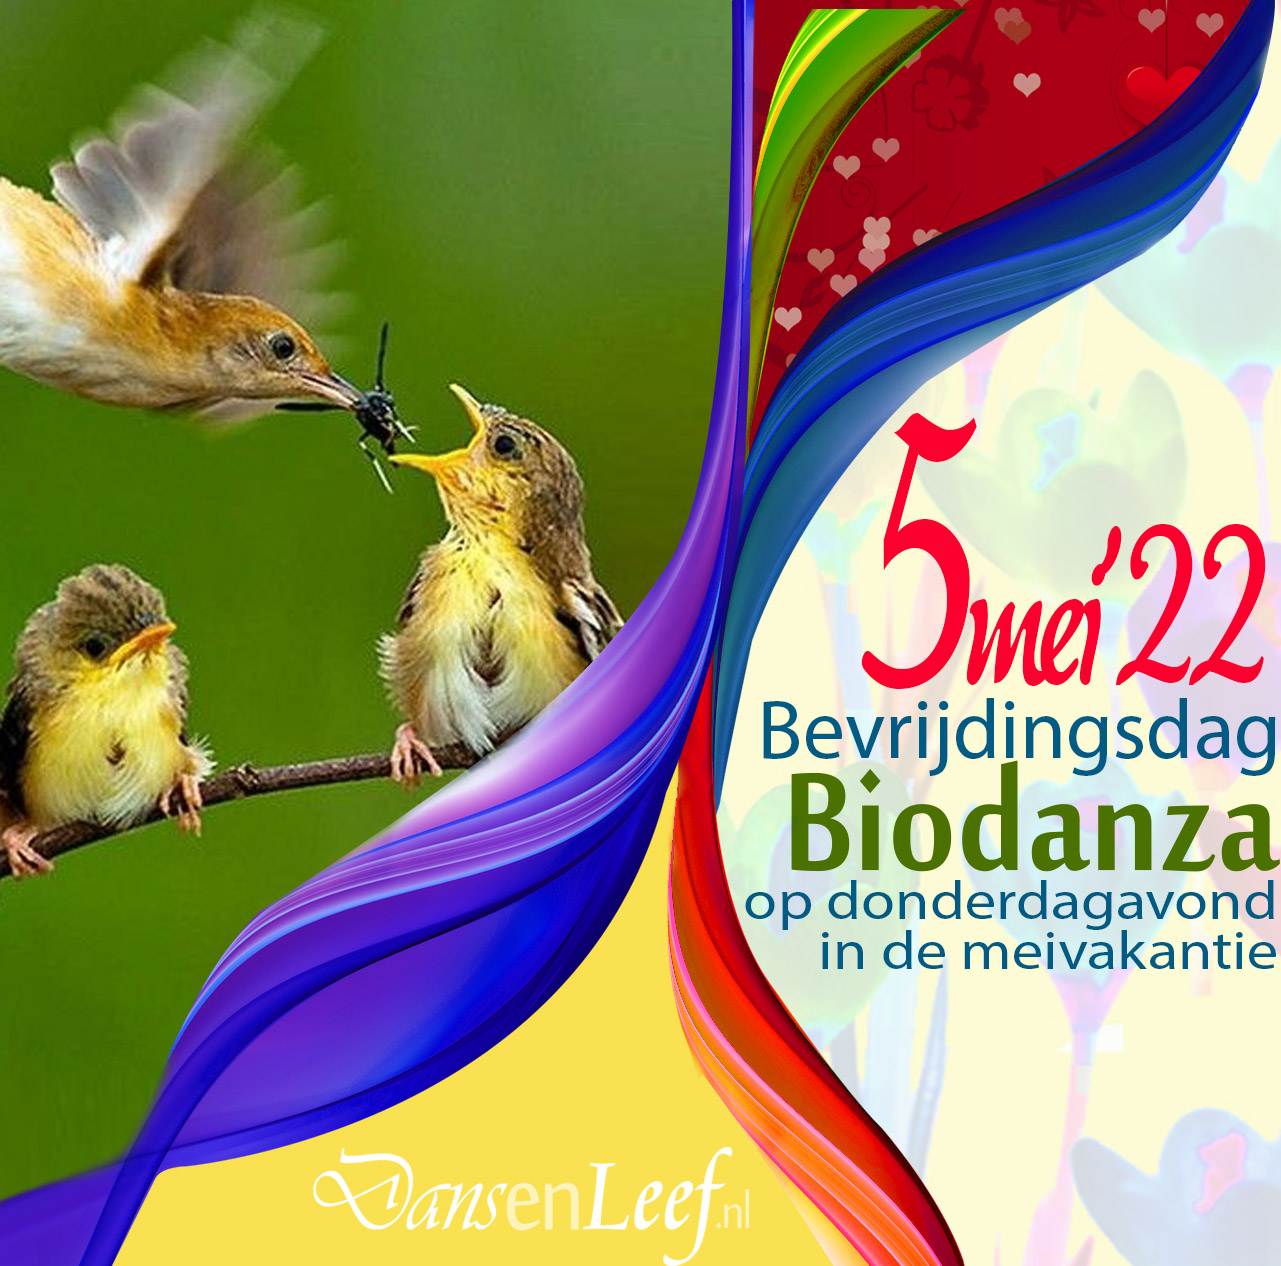 biodanza bevrijdingsdag in de meivakantie